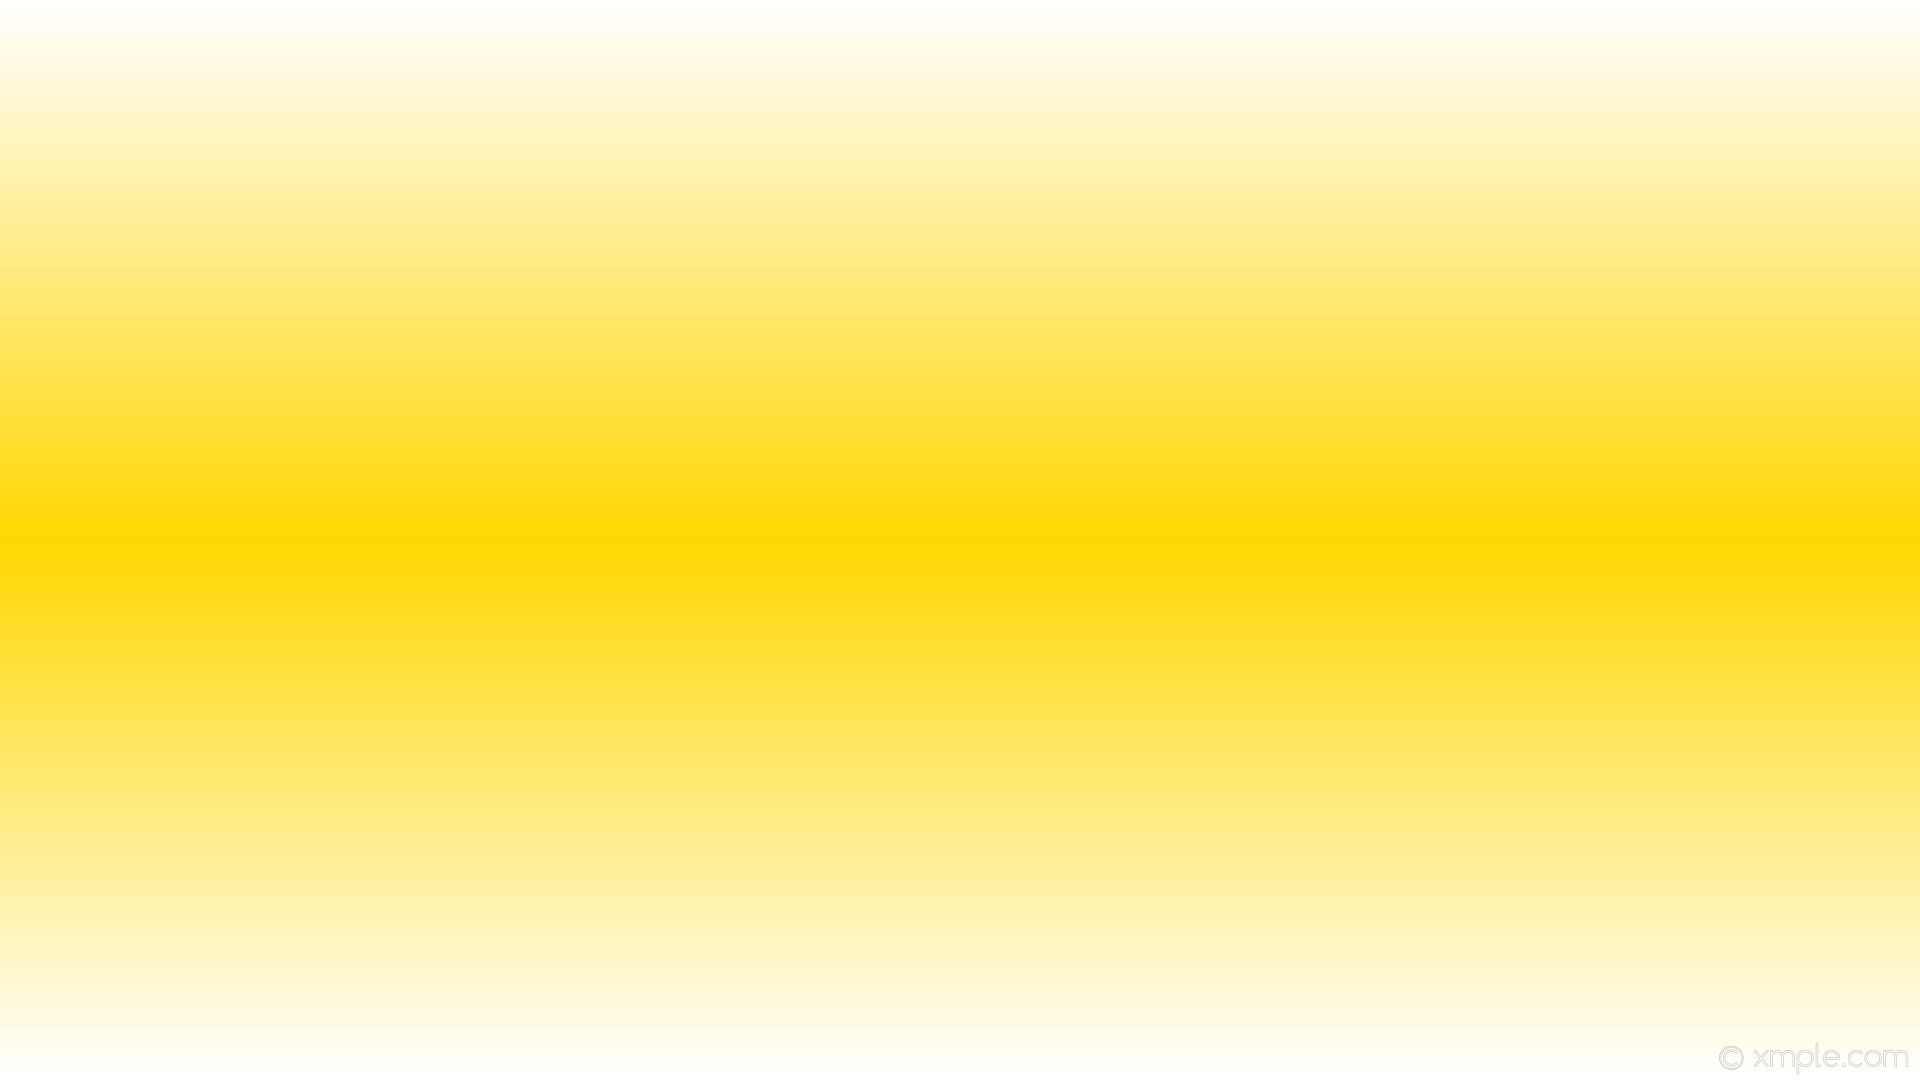 1920x1080 wallpaper white gradient linear highlight yellow gold #ffffff #ffd700 90Â°  50%